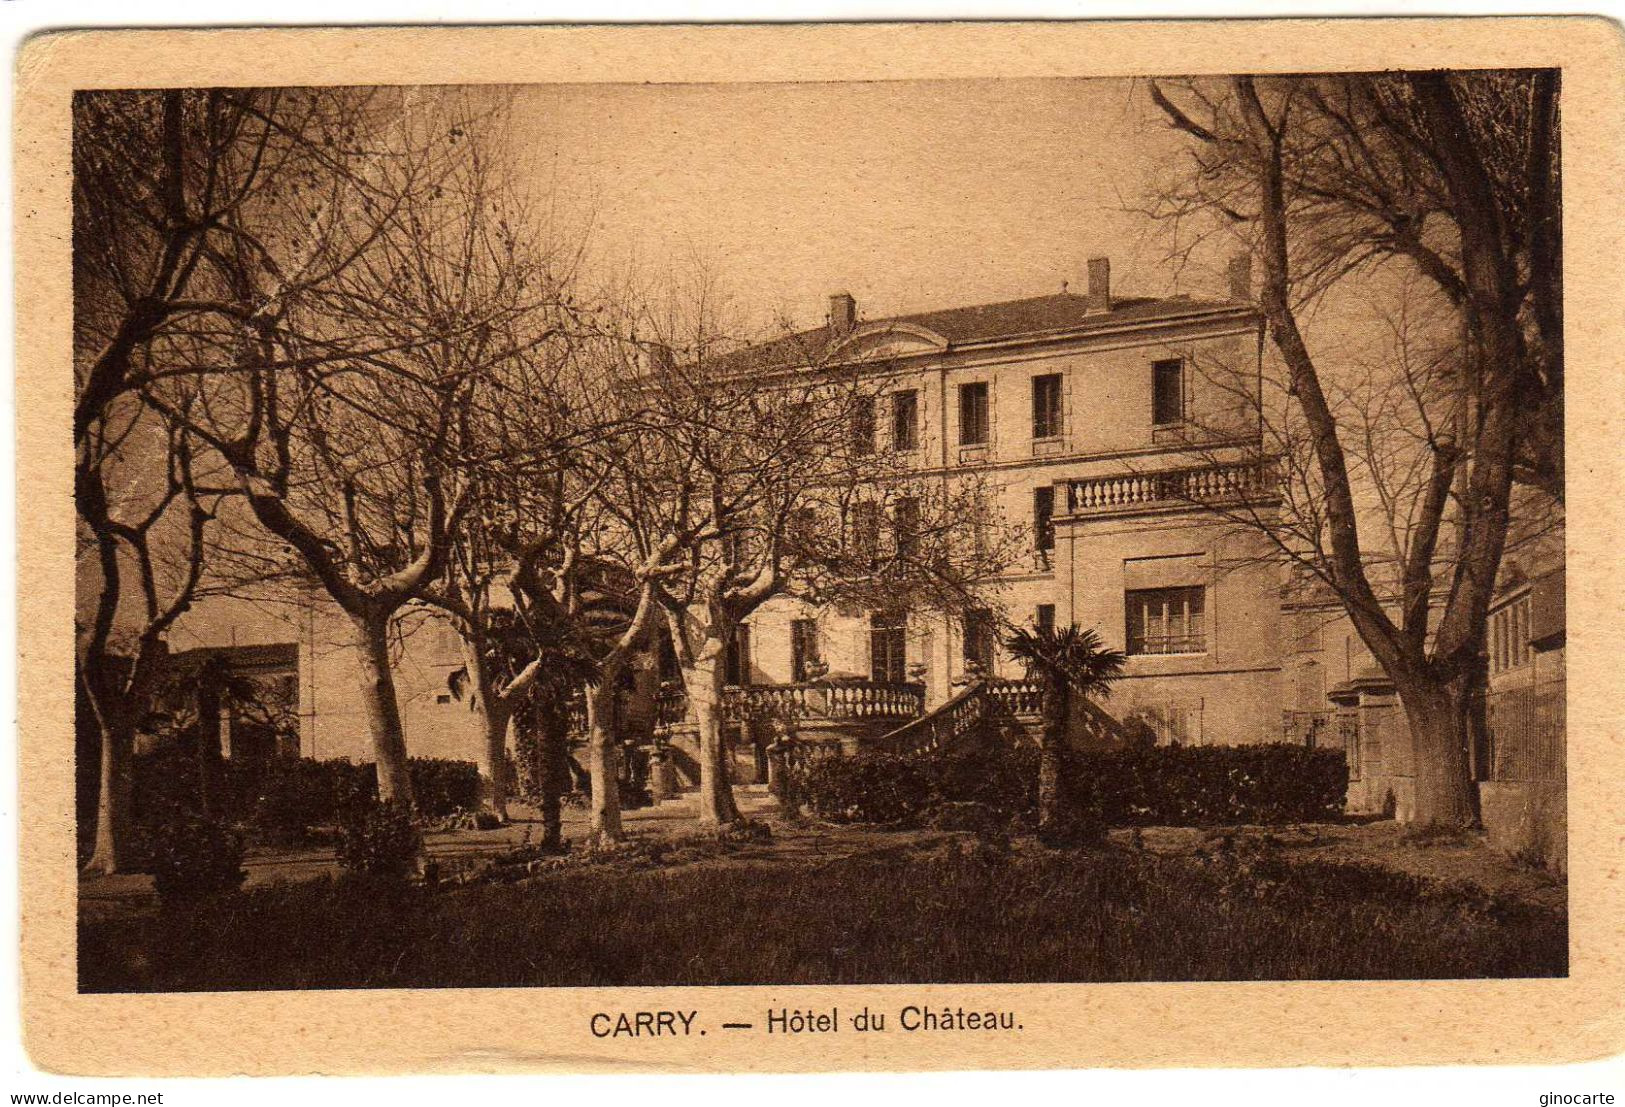 Carry Le Rouet Hotel Du Chateau - Carry-le-Rouet